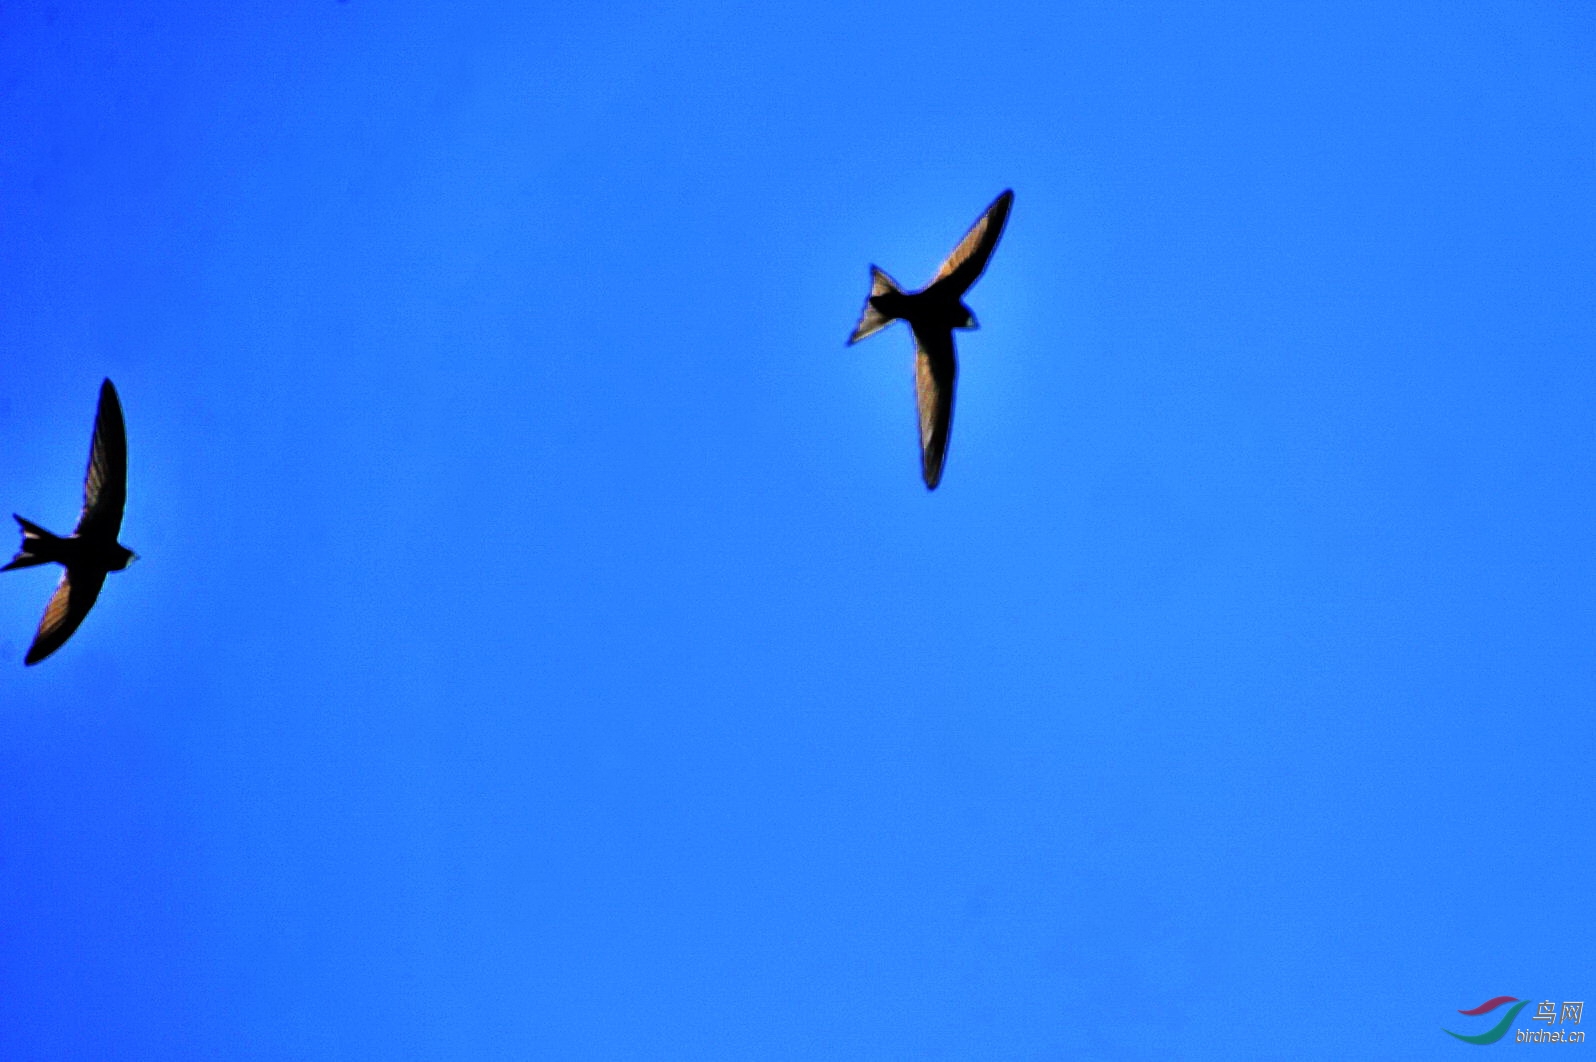 长机僚机--昆明湖西堤燕子扫描 - 观鸟拍鸟之旅